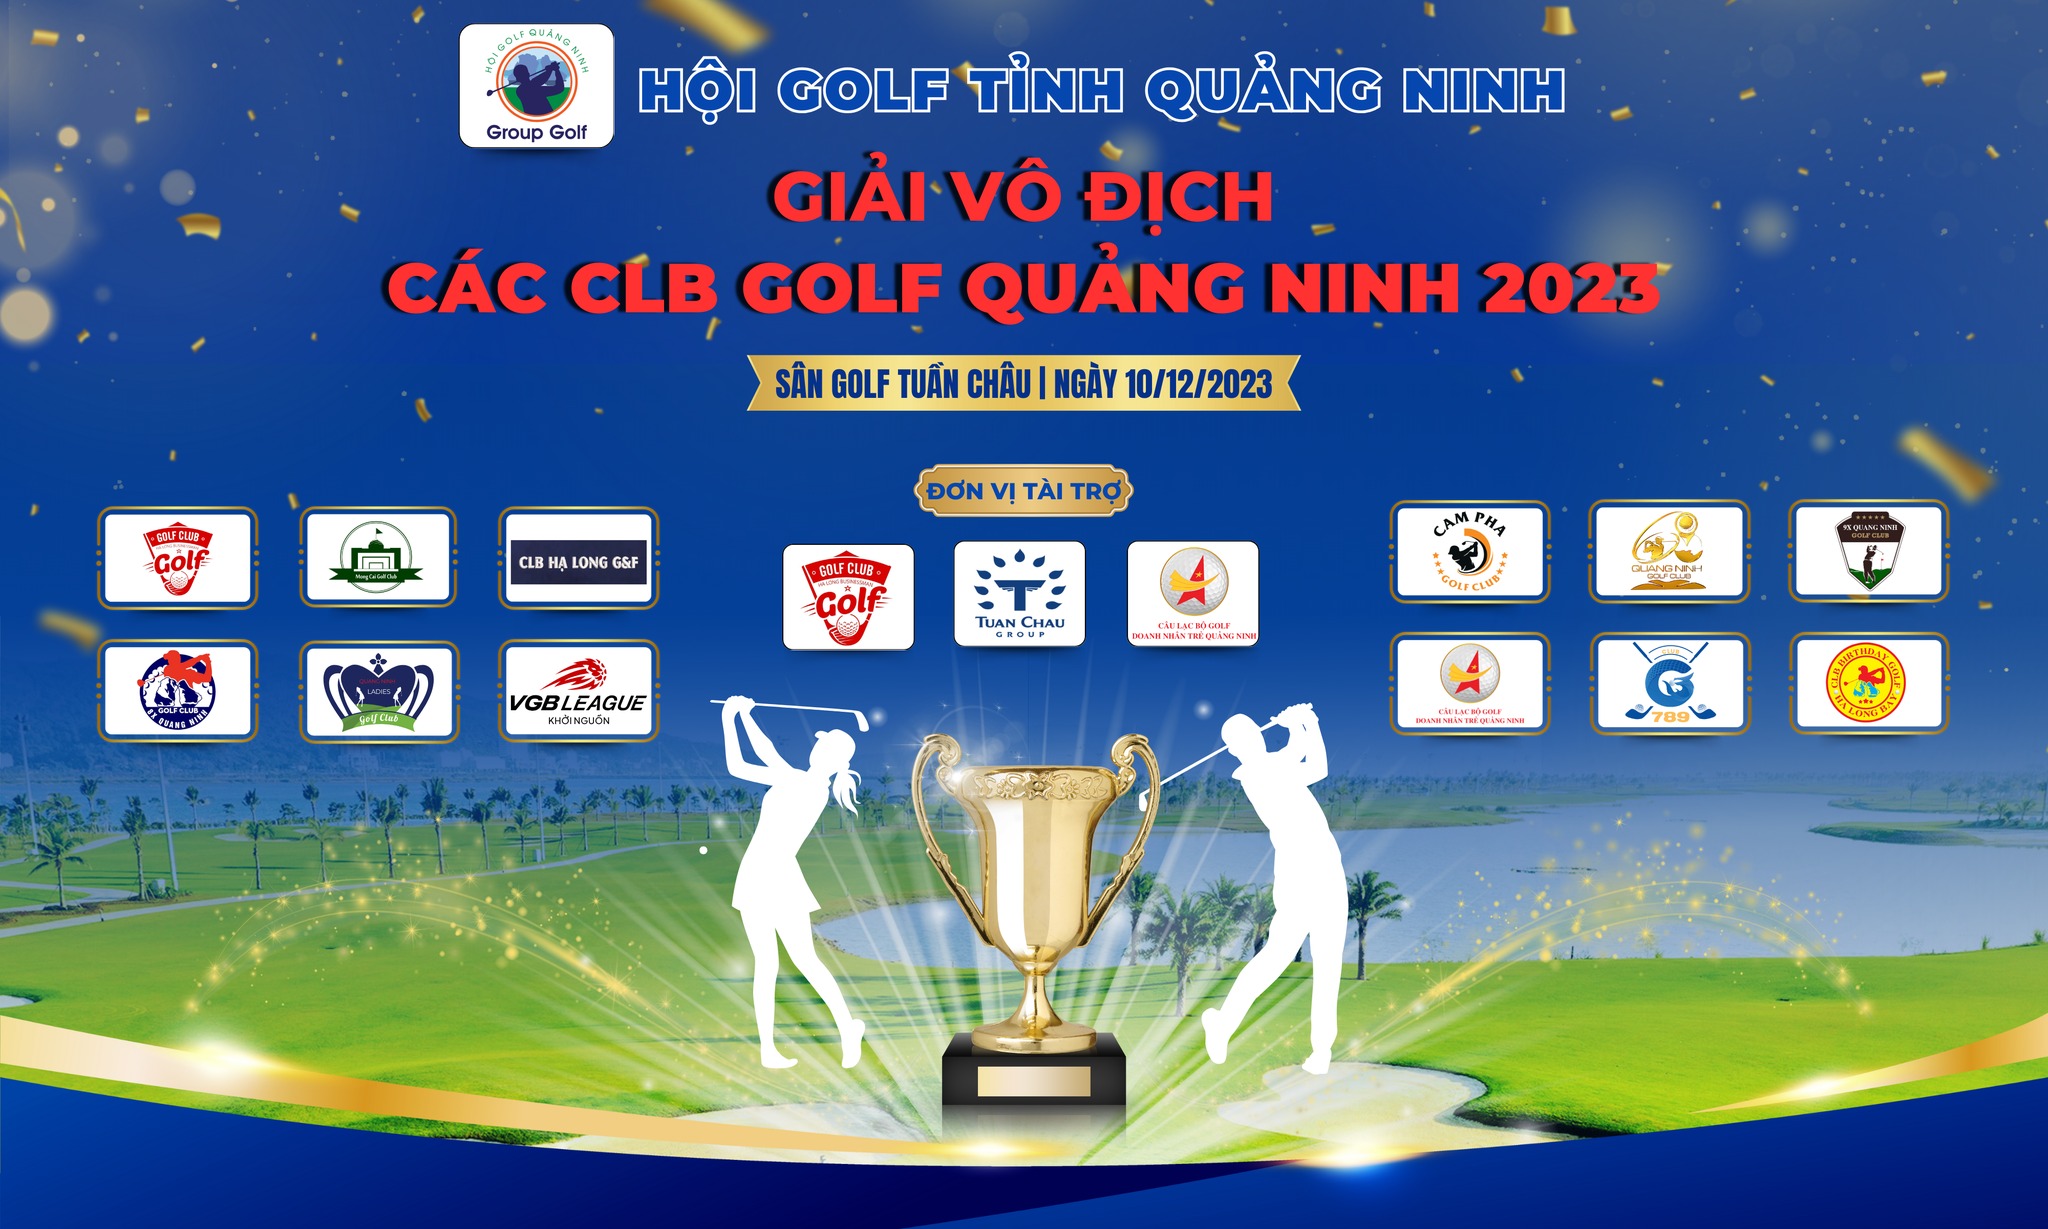 Giải vô địch các CLB Golf Quảng Ninh năm 2023